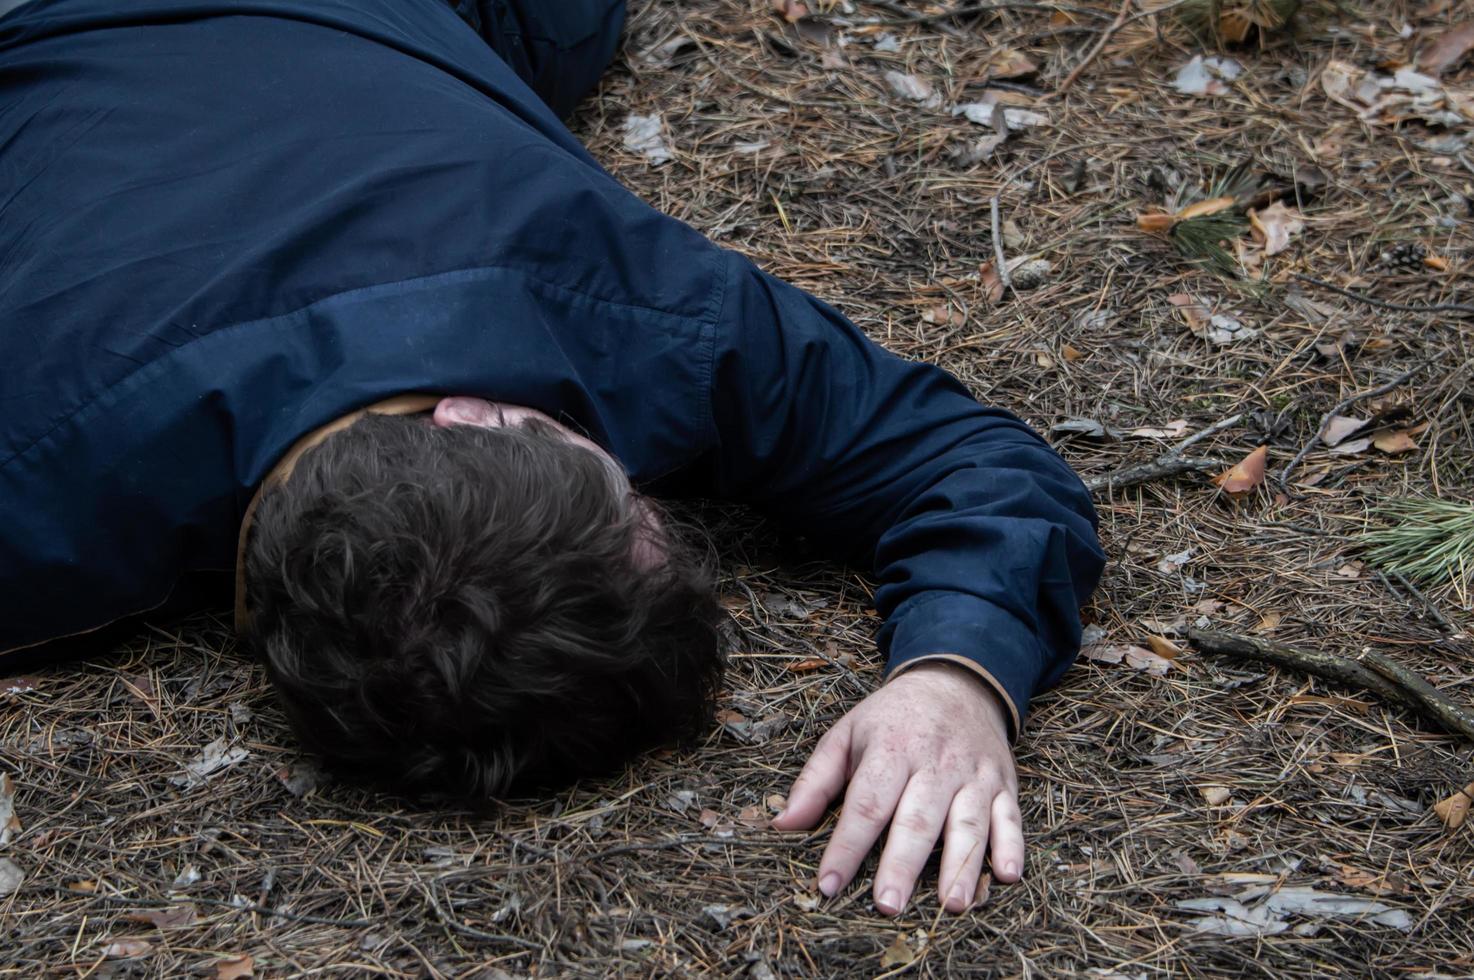 Mord im Wald. der Körper eines Mannes in einem blauen Hemd liegt auf dem Boden zwischen den Bäumen im Wald. Opfer eines Angriffs. foto